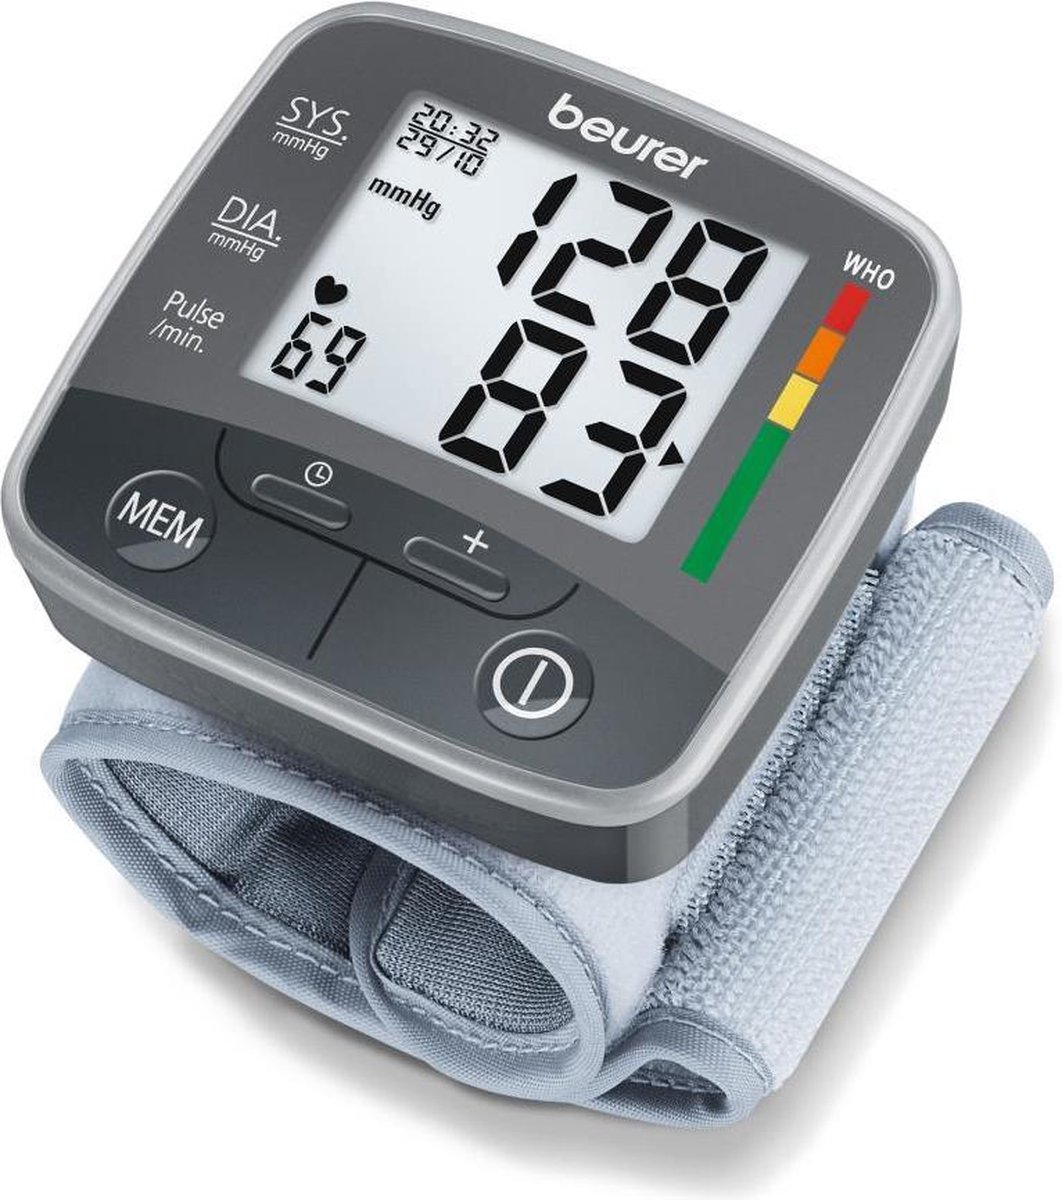 Beurer BC 32 Bloeddrukmeter pols - Hartslagmeter - Onregelmatige hartslag – Risico-indicator - 2 Gebruikersgeheugen - Manchet pols 13,5-19,5 cm - Incl. batterijen en opberg box - 5 Jaar garantie - Beurer